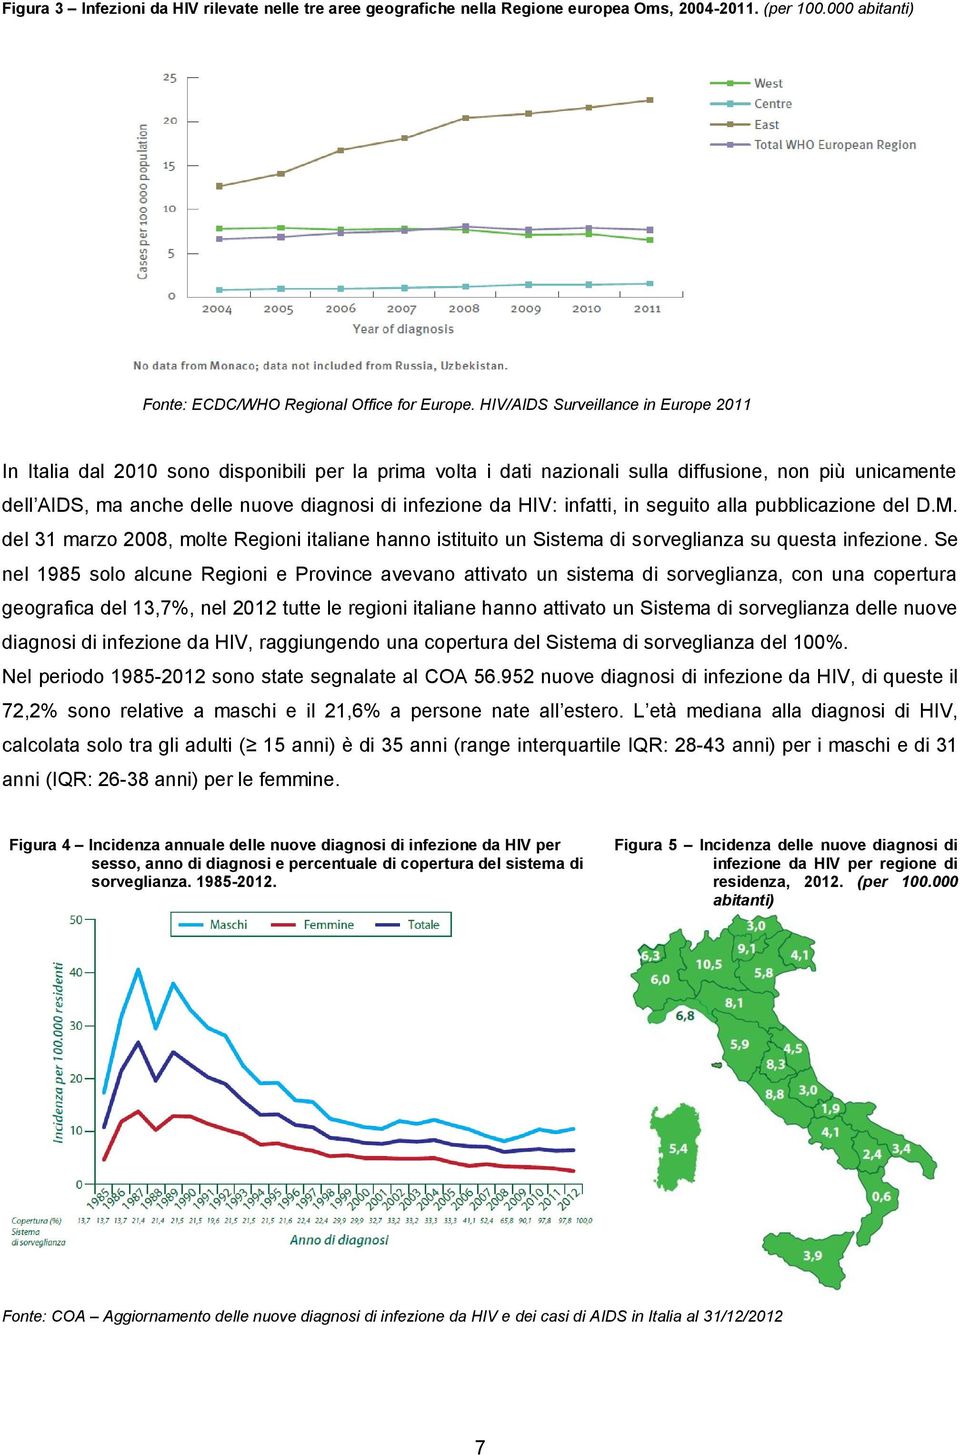 da HIV: infatti, in seguito alla pubblicazione del D.M. del 31 marzo 2008, molte Regioni italiane hanno istituito un Sistema di sorveglianza su questa infezione.